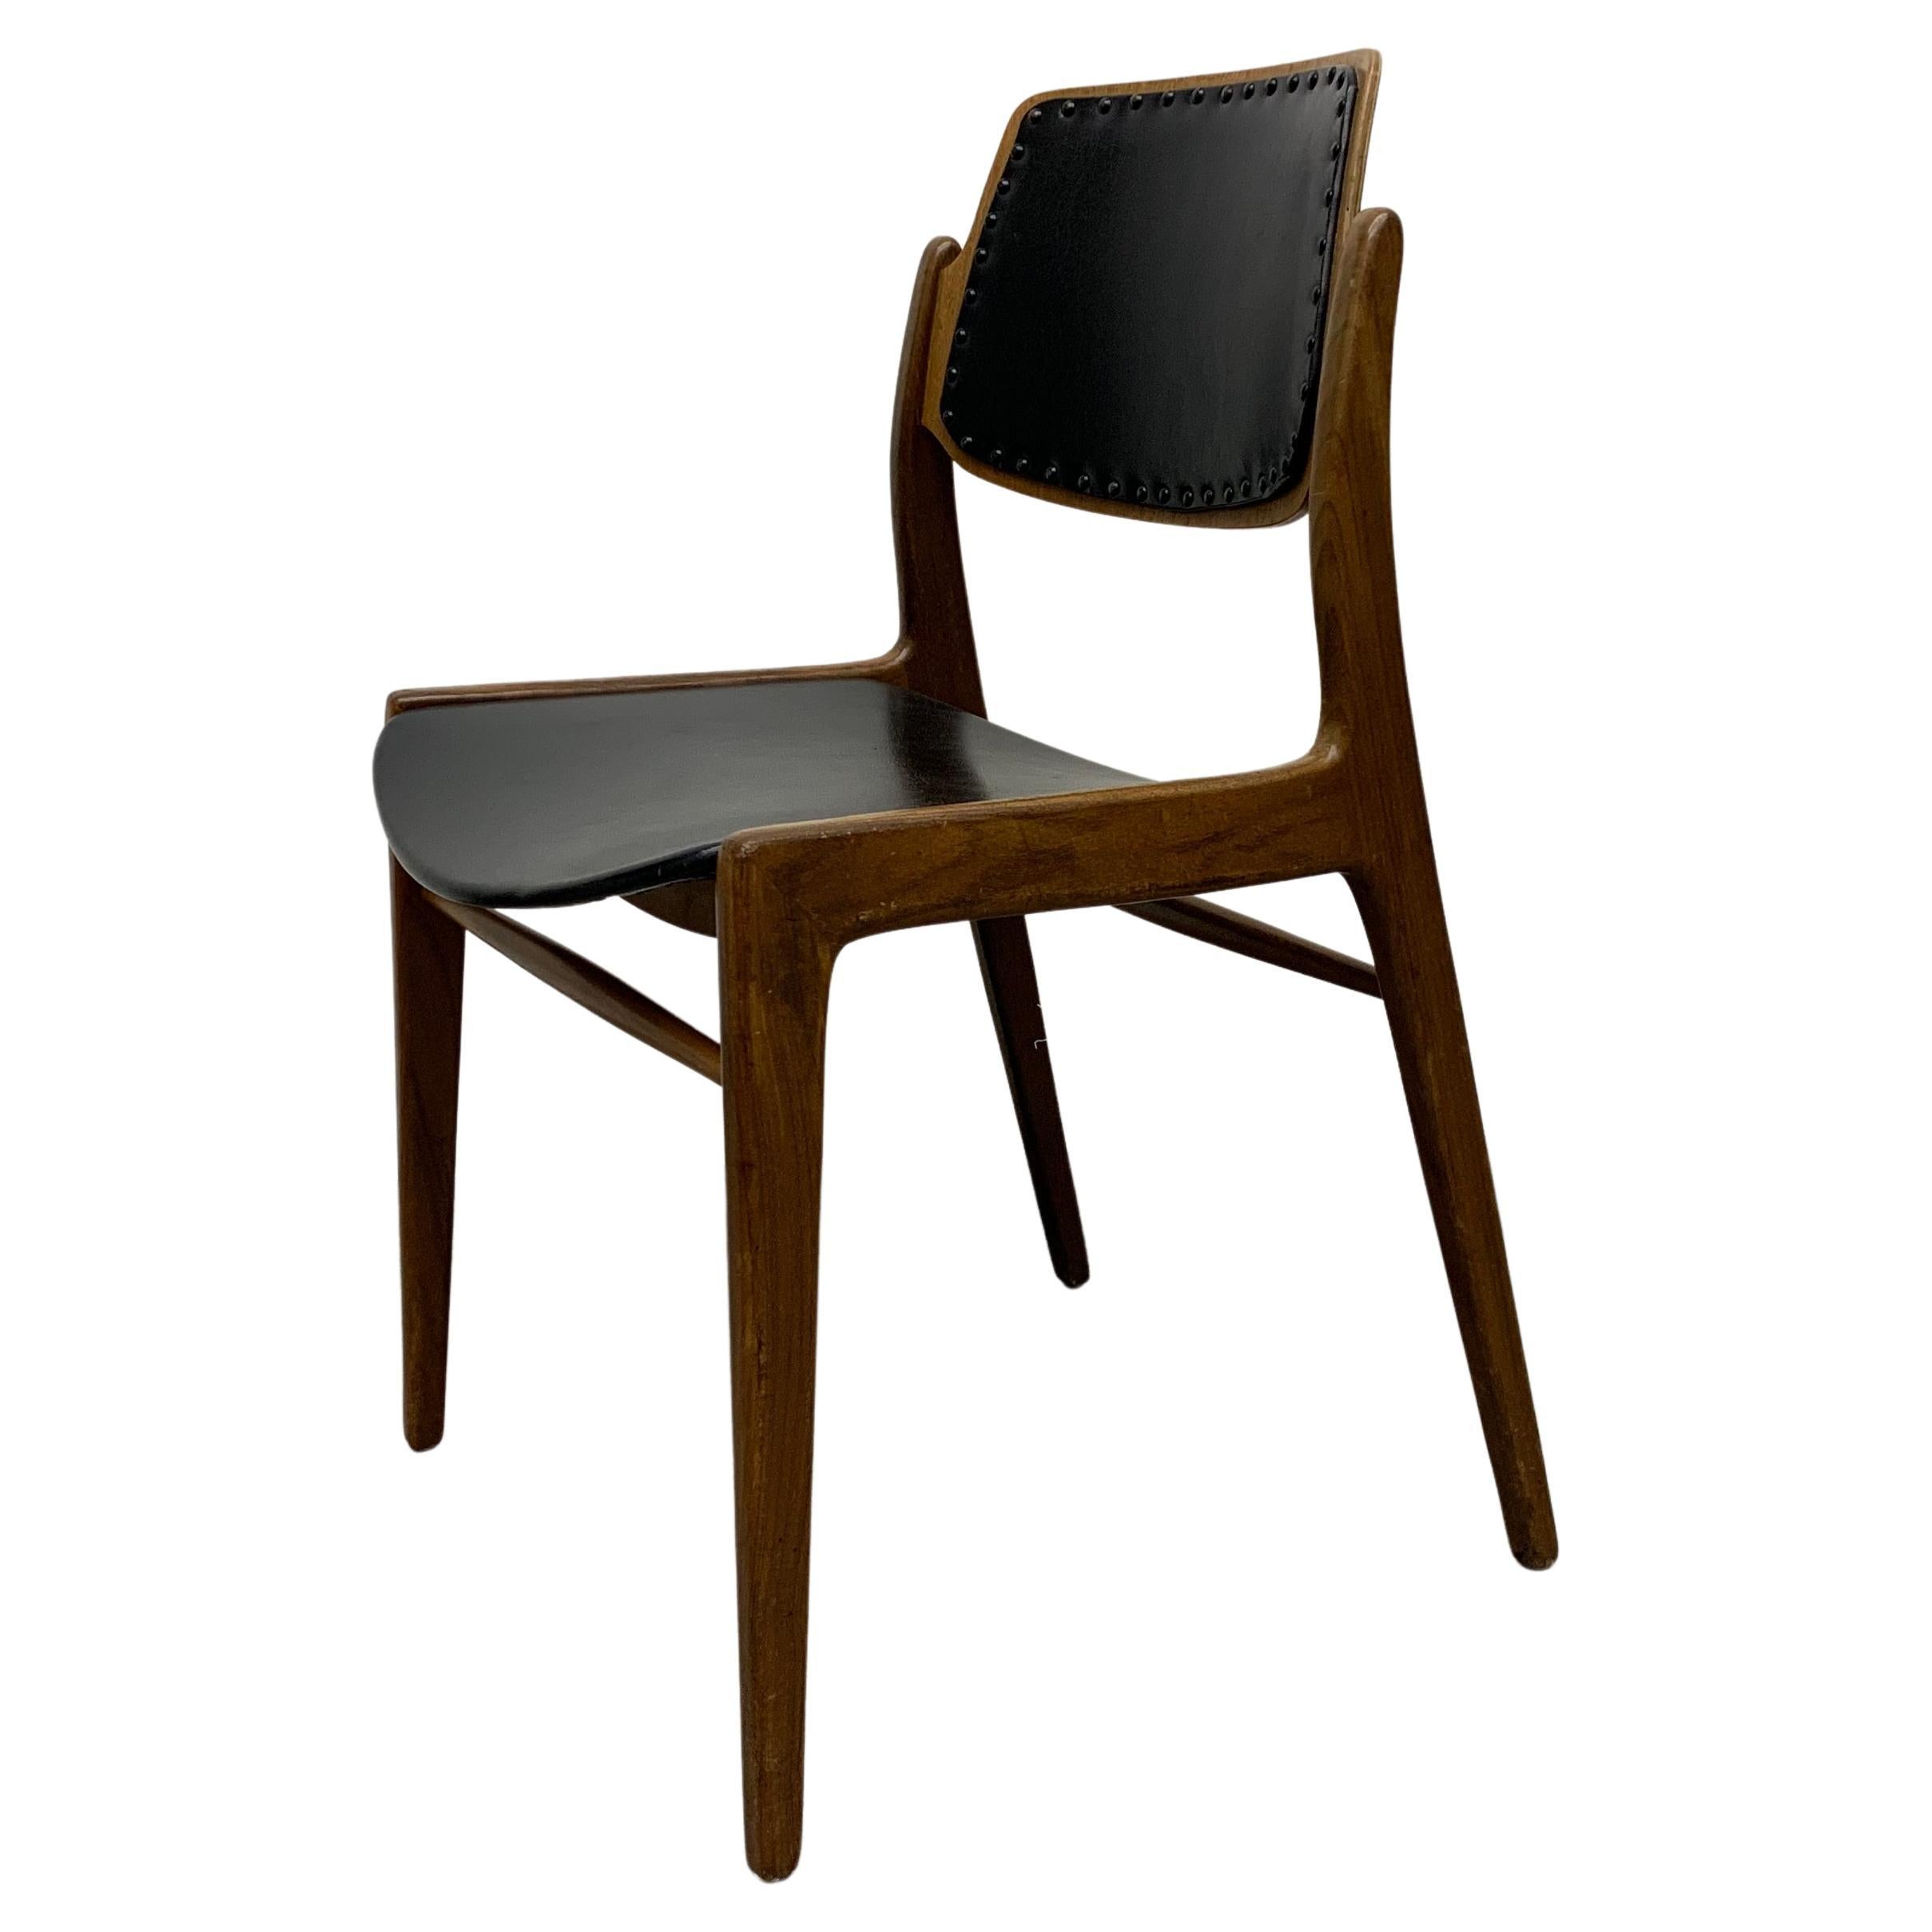 Hartmut Lohmeyer for Wilkhahn 1950’s dining chair teak wood design